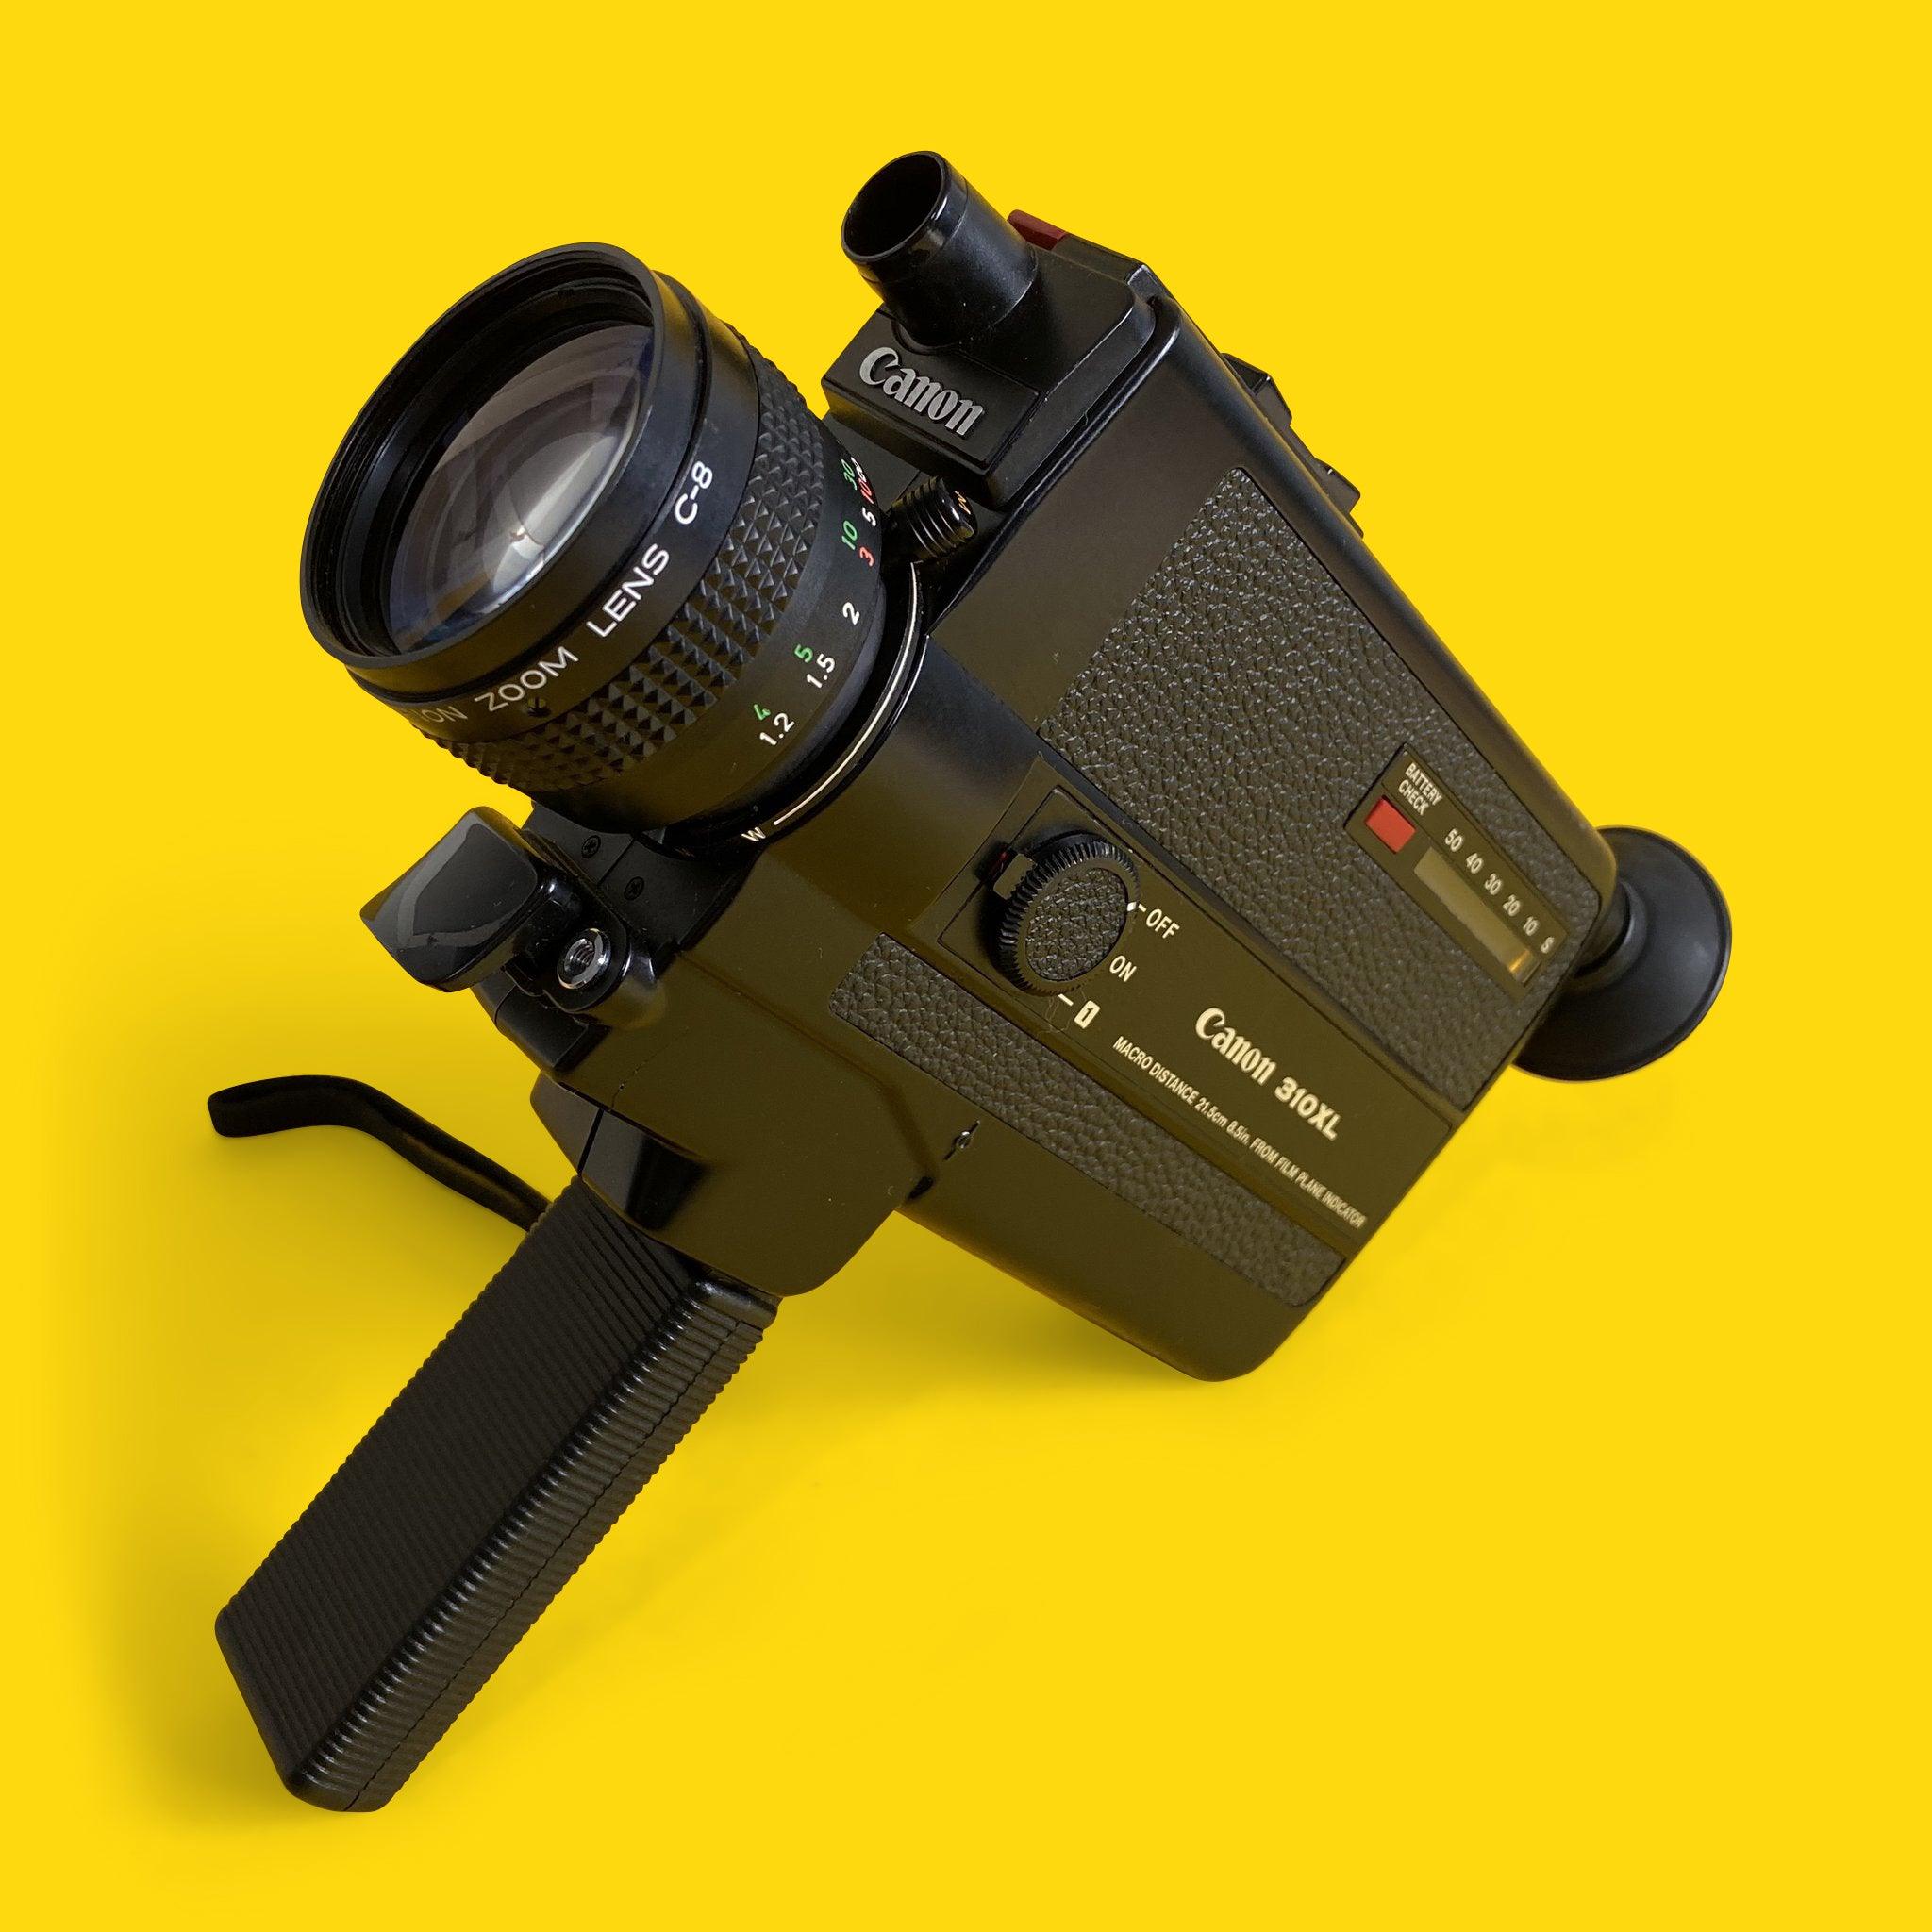 Canon 310XL Super 8 ビンテージ シネマ カメラ